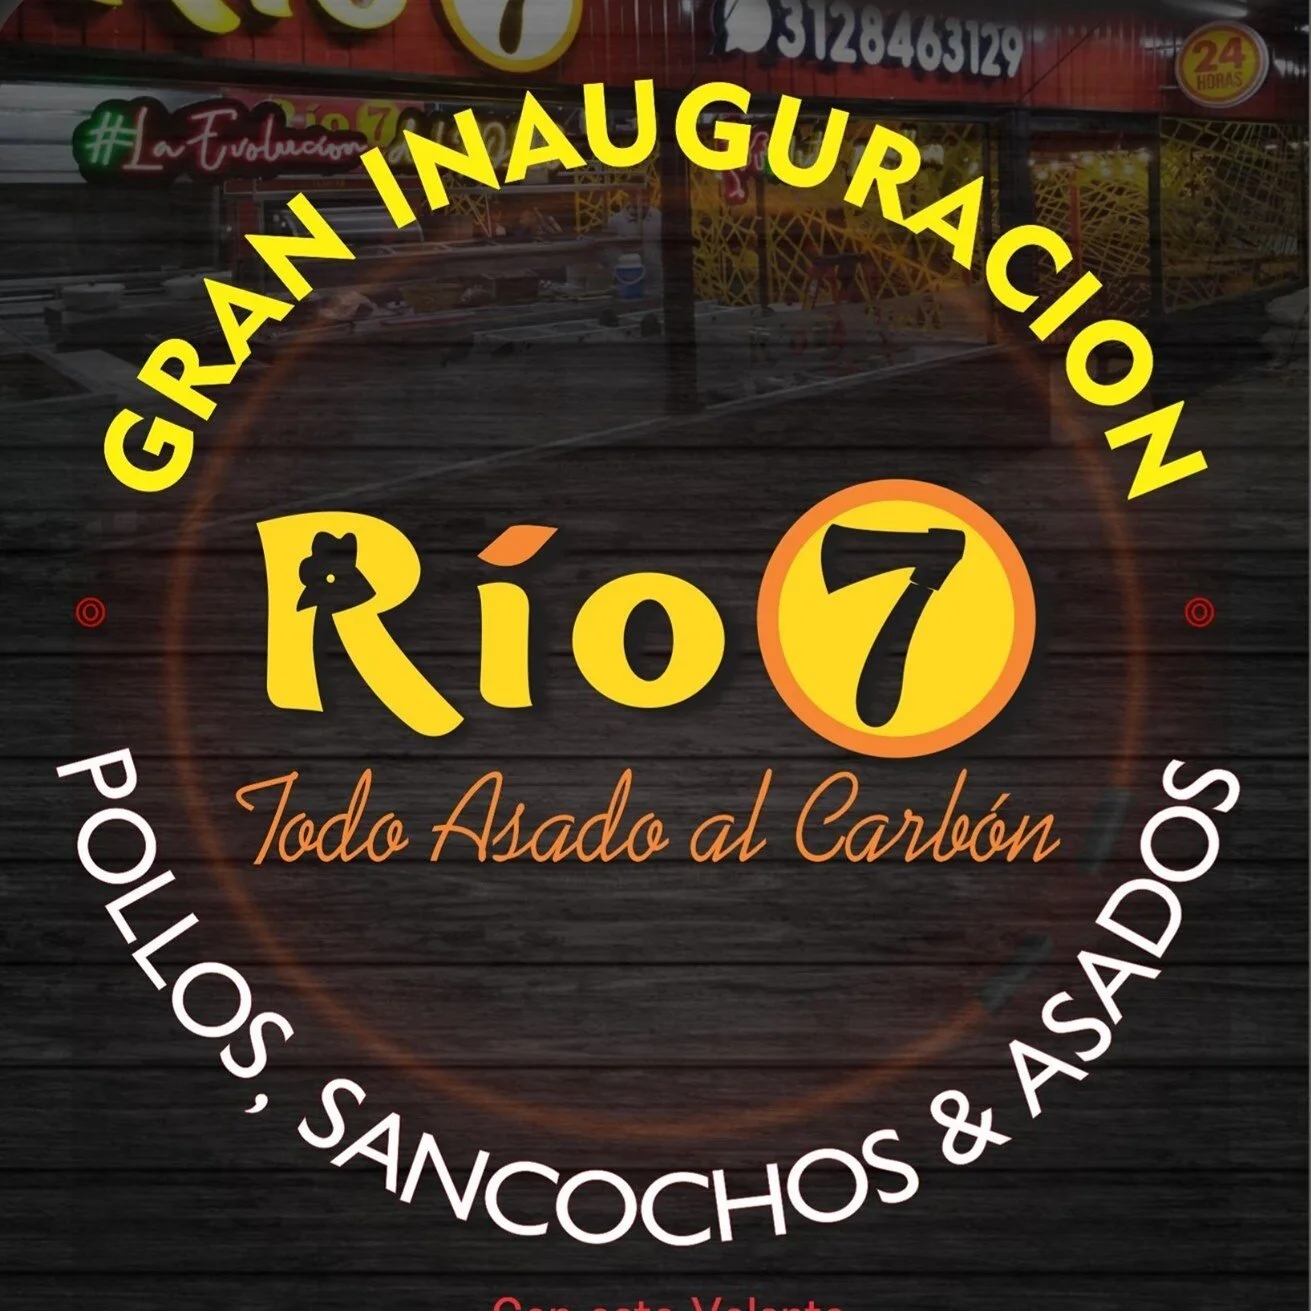 Restaurante-rio-7-22354